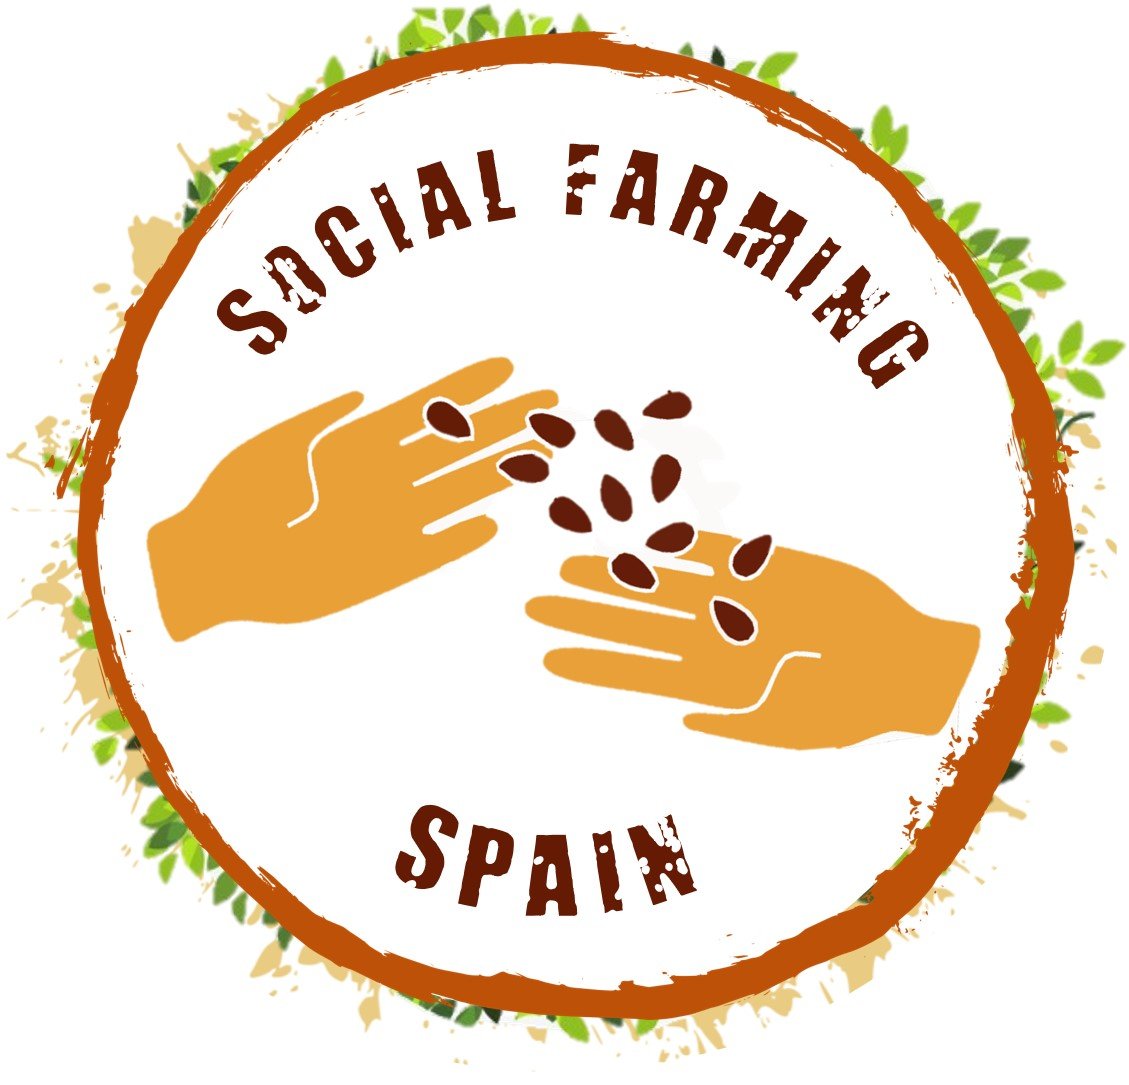 Creamos oportunidades | Compartimos conocimiento #AgriculturaSocial #EspanaVaciada #Rural